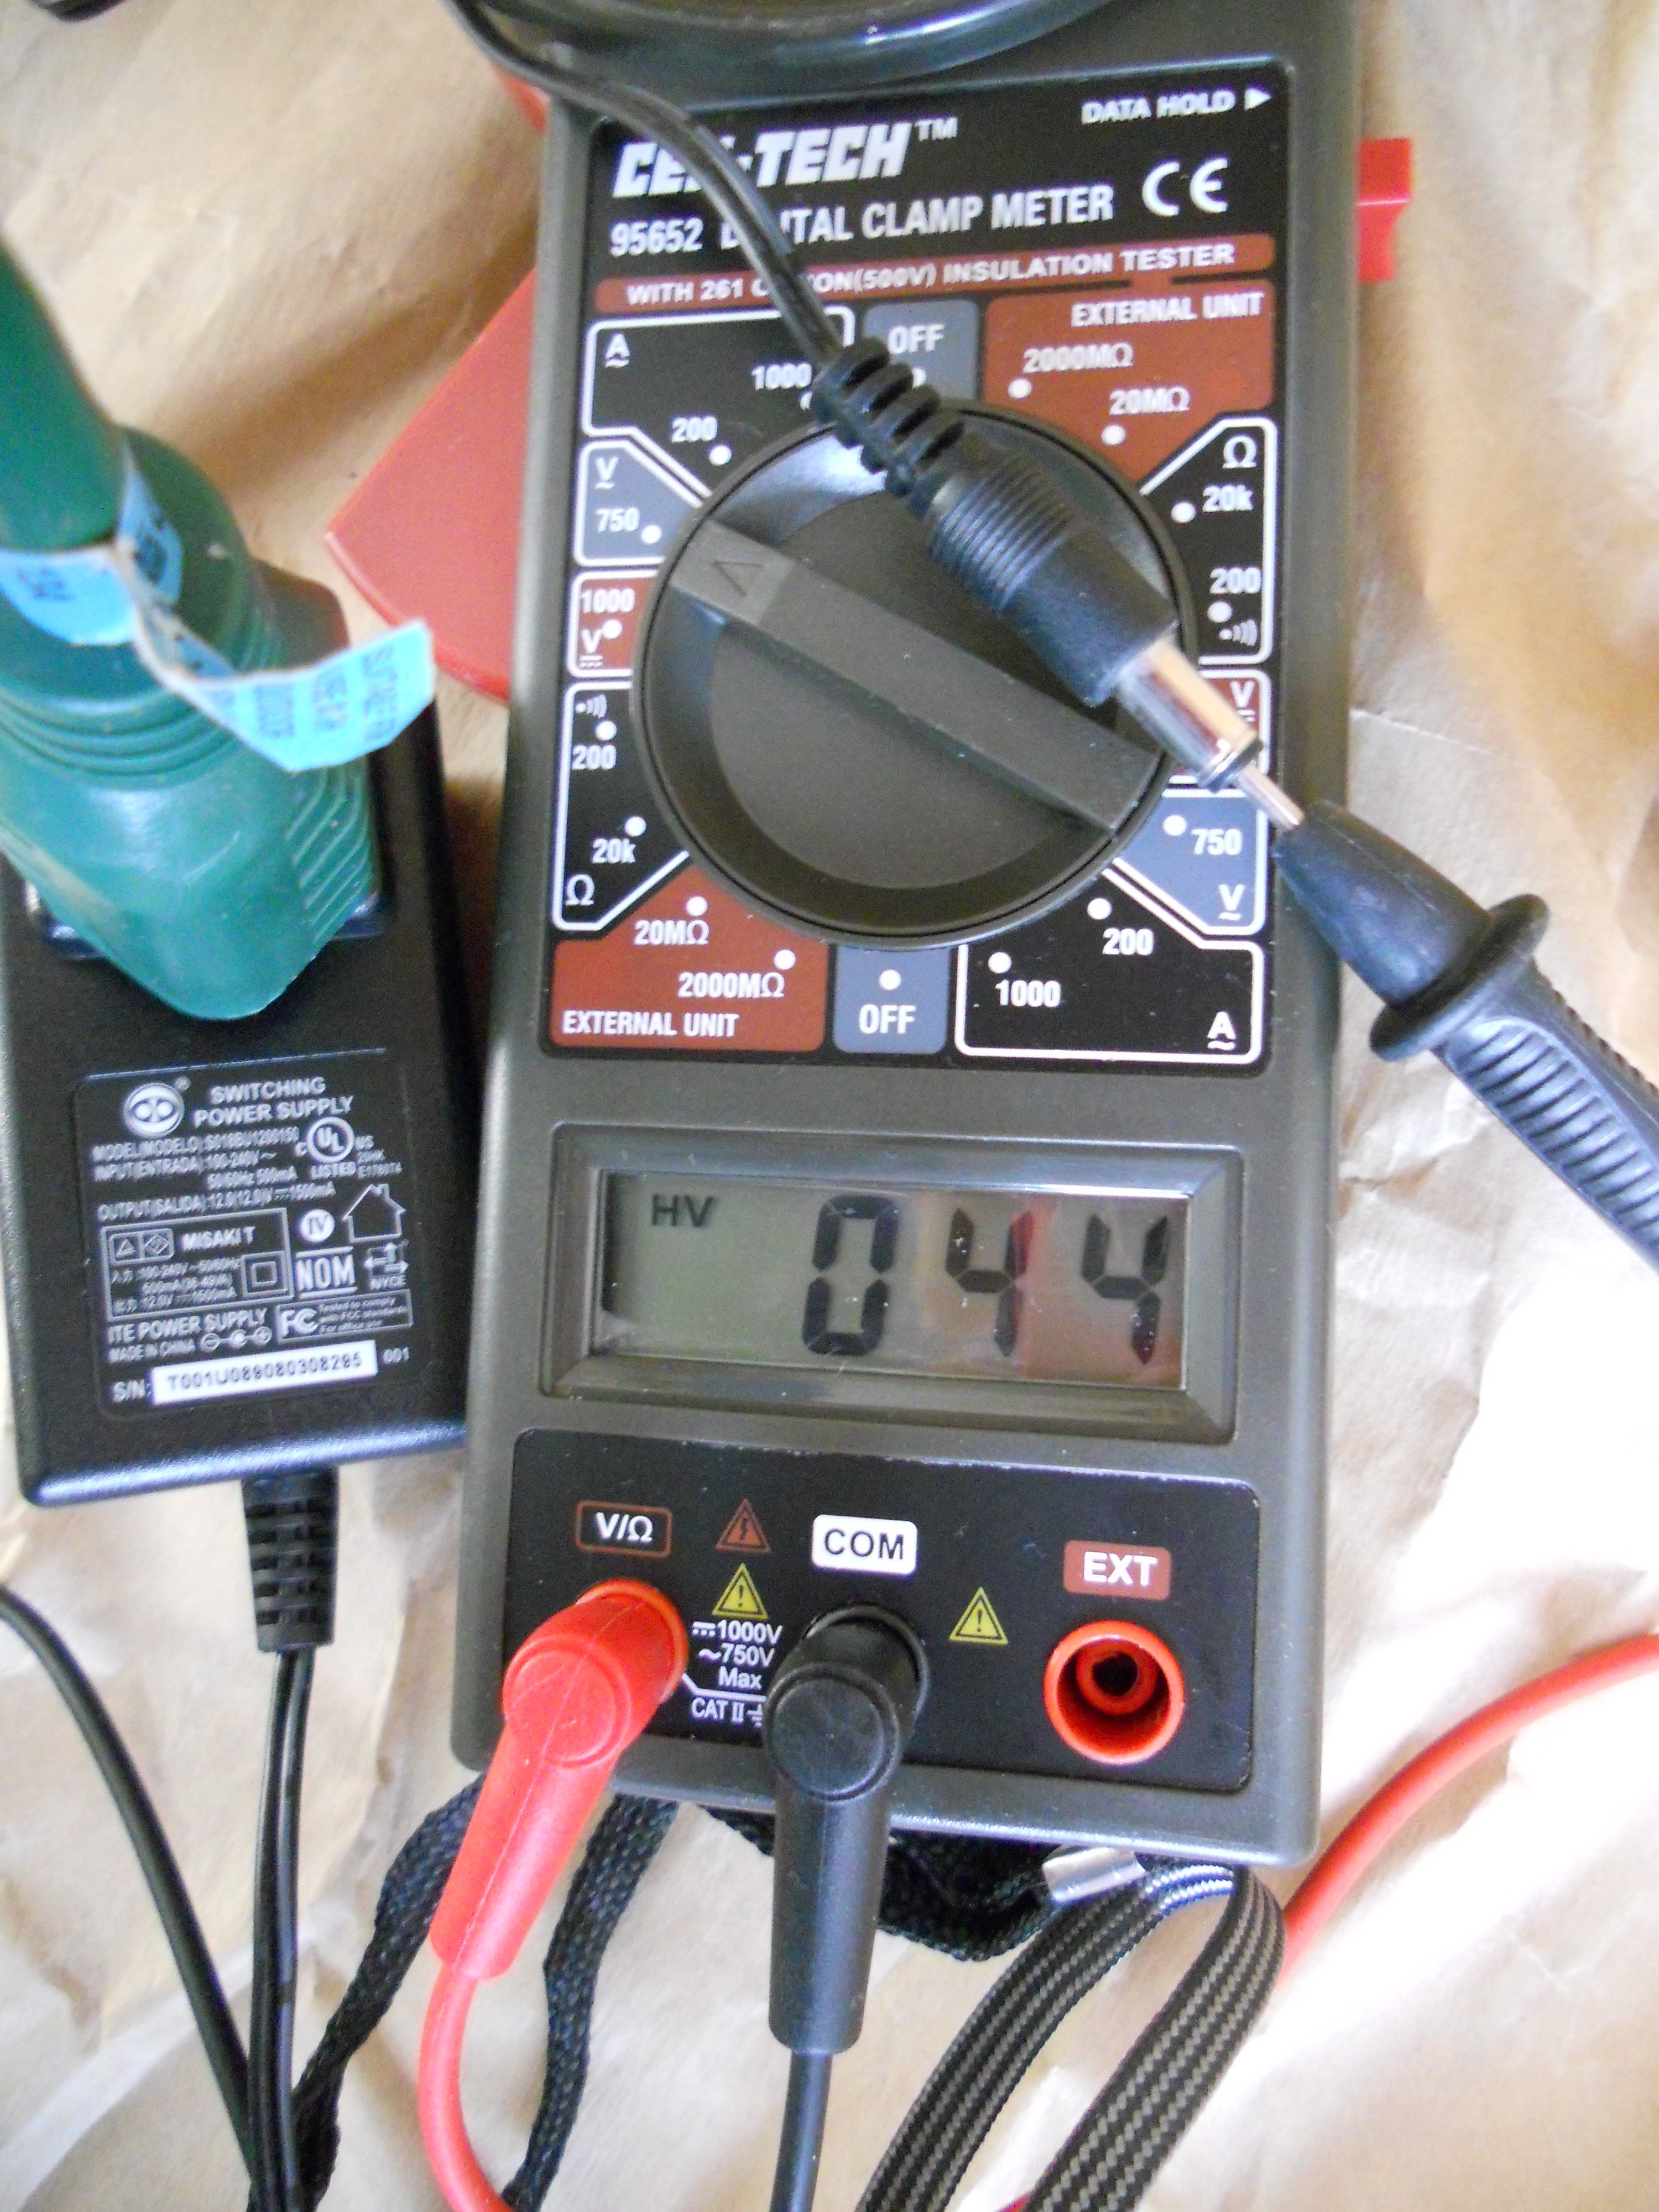 Western Digita Power Supply #1 - 44 volts leakage